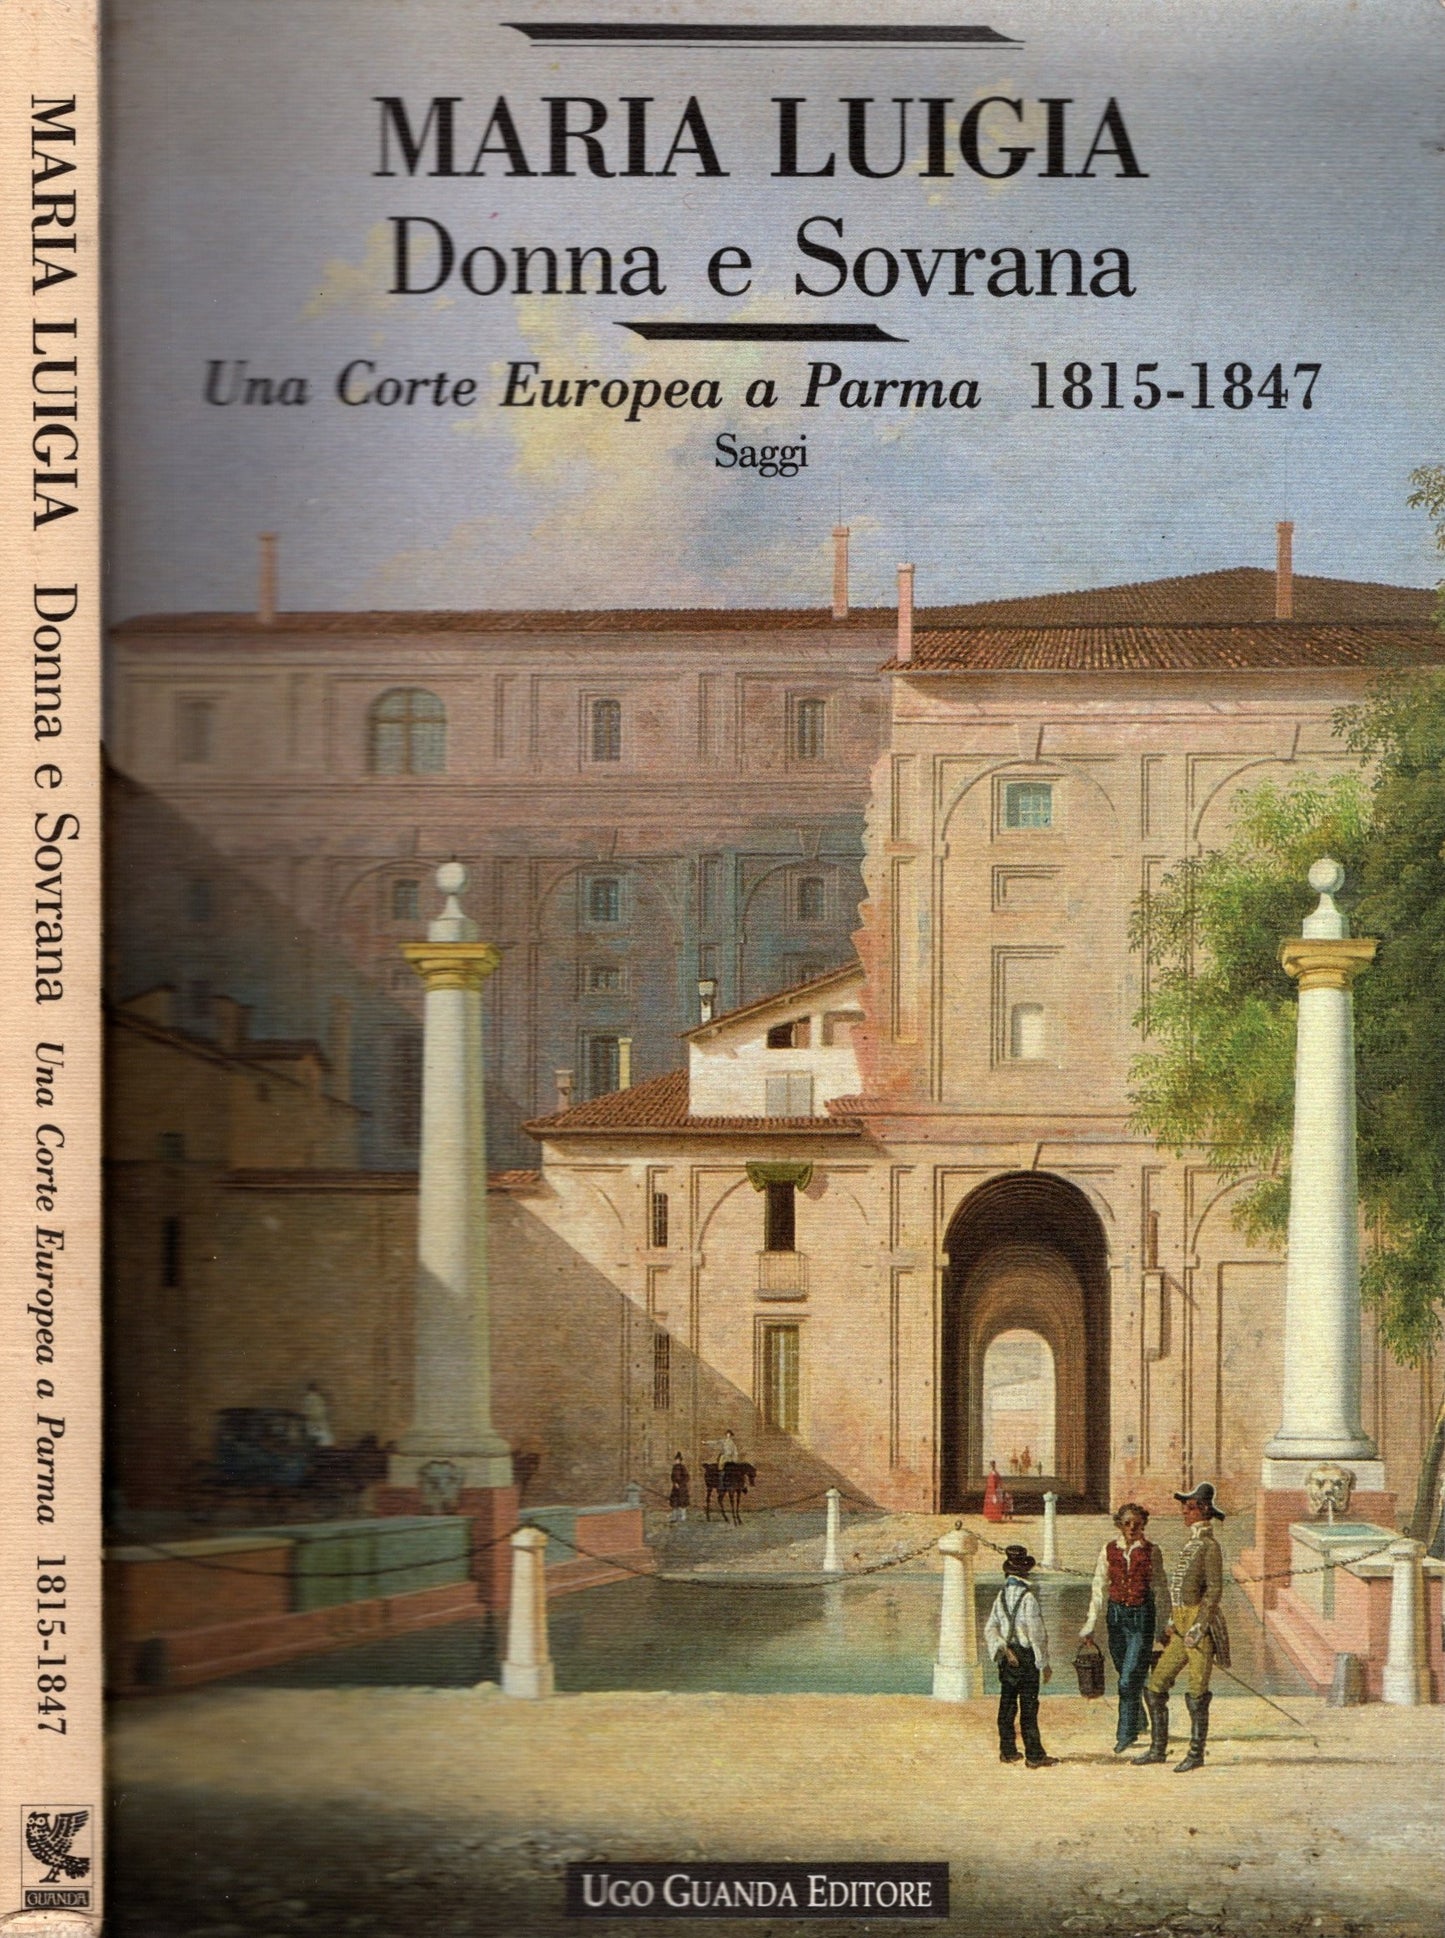 Maria Luigia Donna e Soivrana - Una corte europea a Parma 1815-1847 Saggi